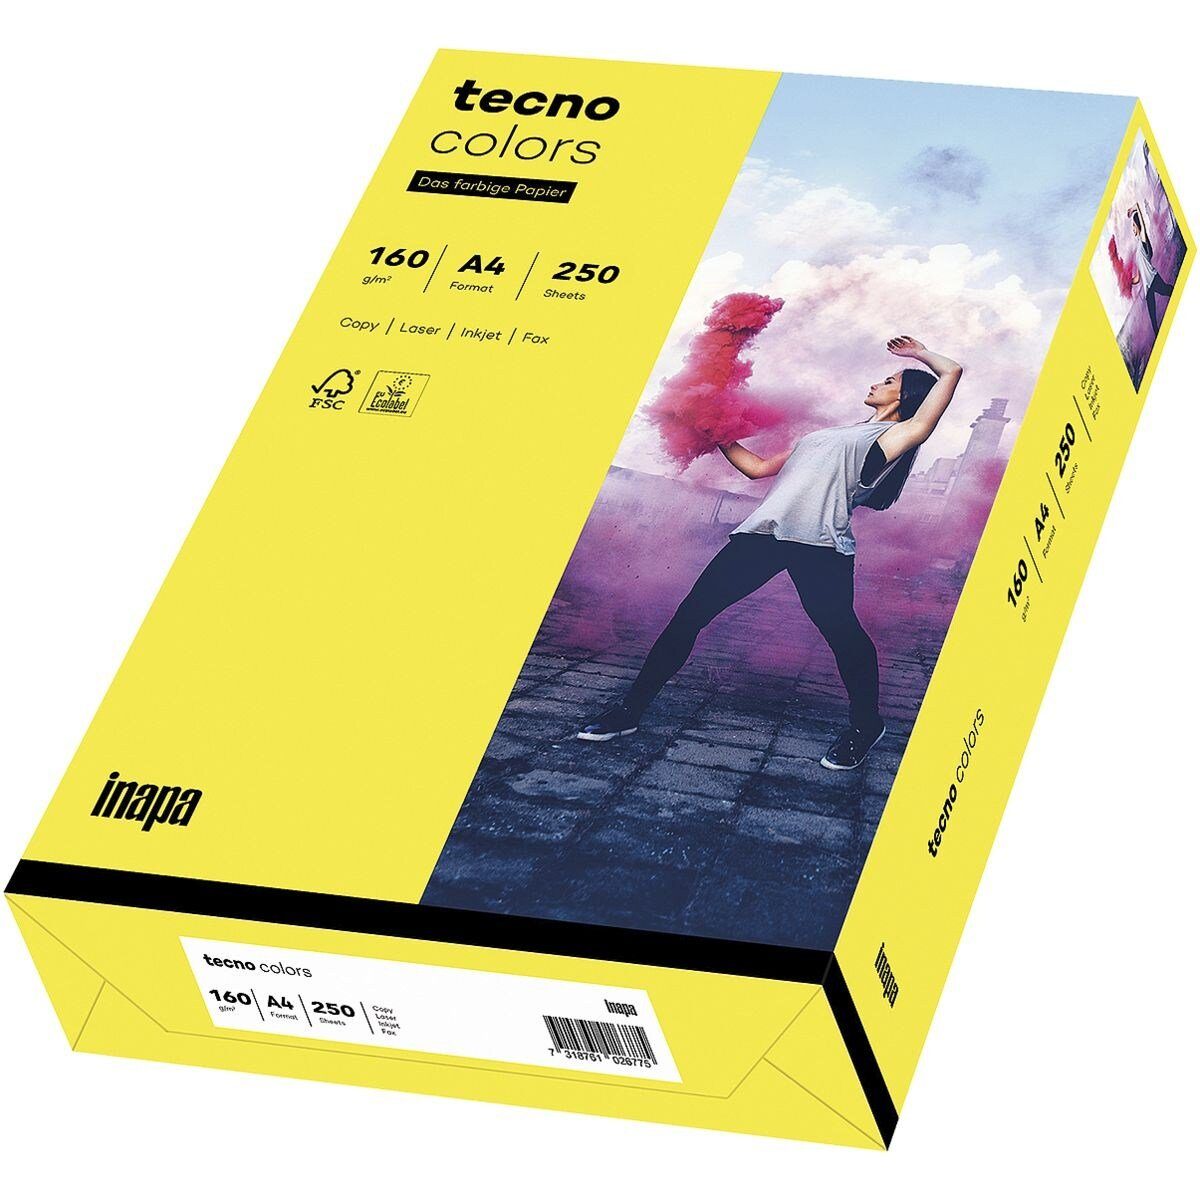 Inapa tecno Drucker- und Kopierpapier Rainbow / tecno Colors, Intensivfarben, Format DIN A4, 160 g/m², 250 Blatt gelb